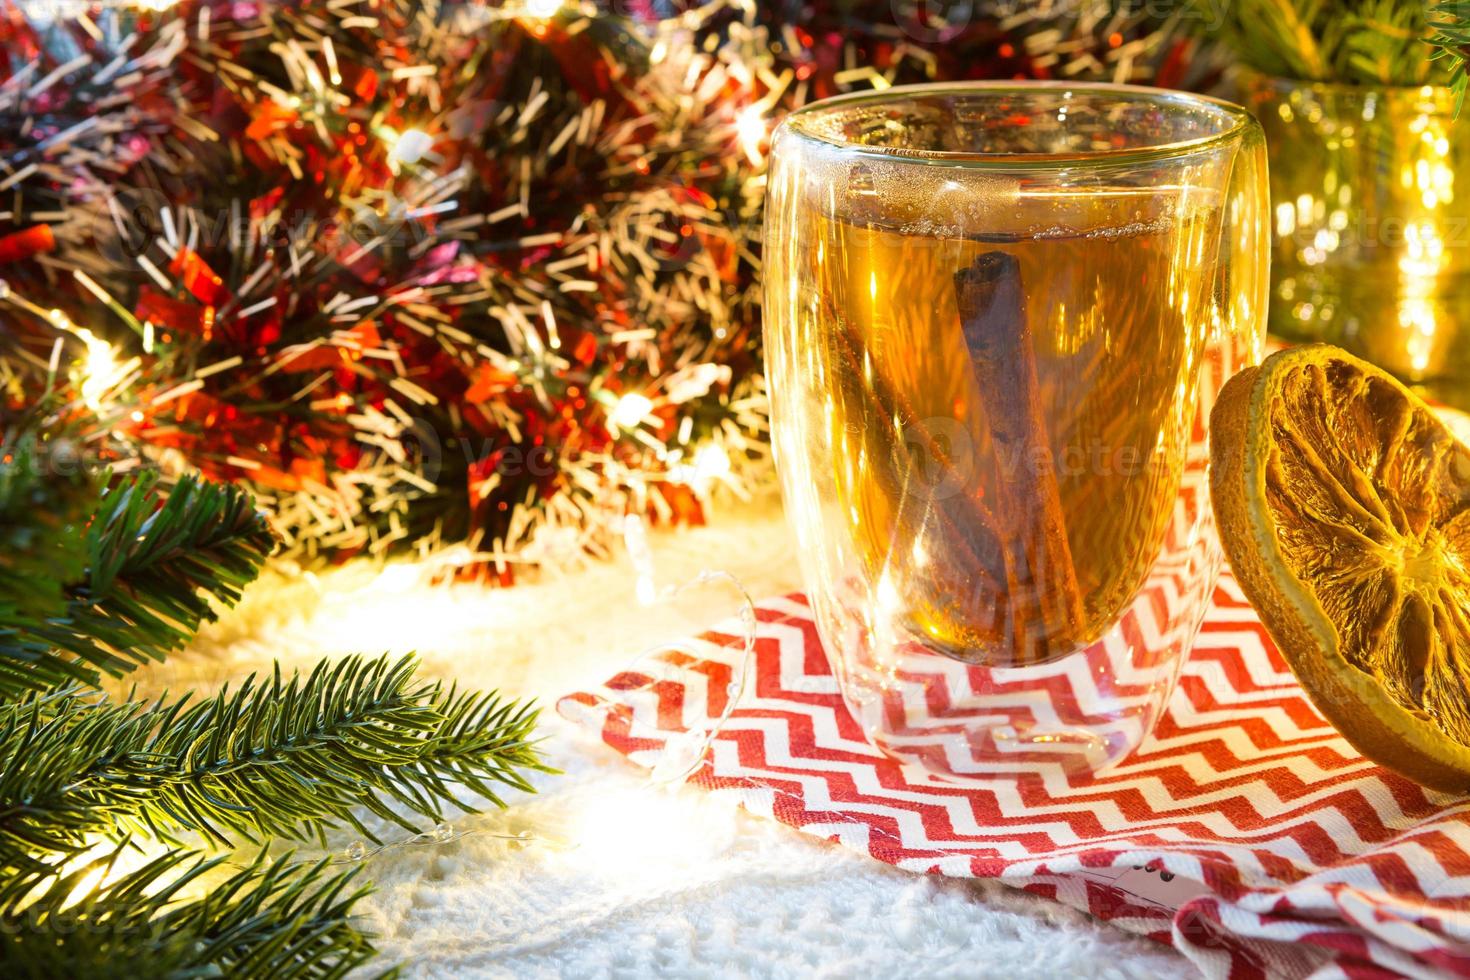 copo de vidro transparente de parede dupla com chá quente e paus de canela em cima da mesa com decoração de natal. atmosfera de ano novo, fatia de laranja seca, guirlanda e enfeites, ramo de abeto, aconchegante foto